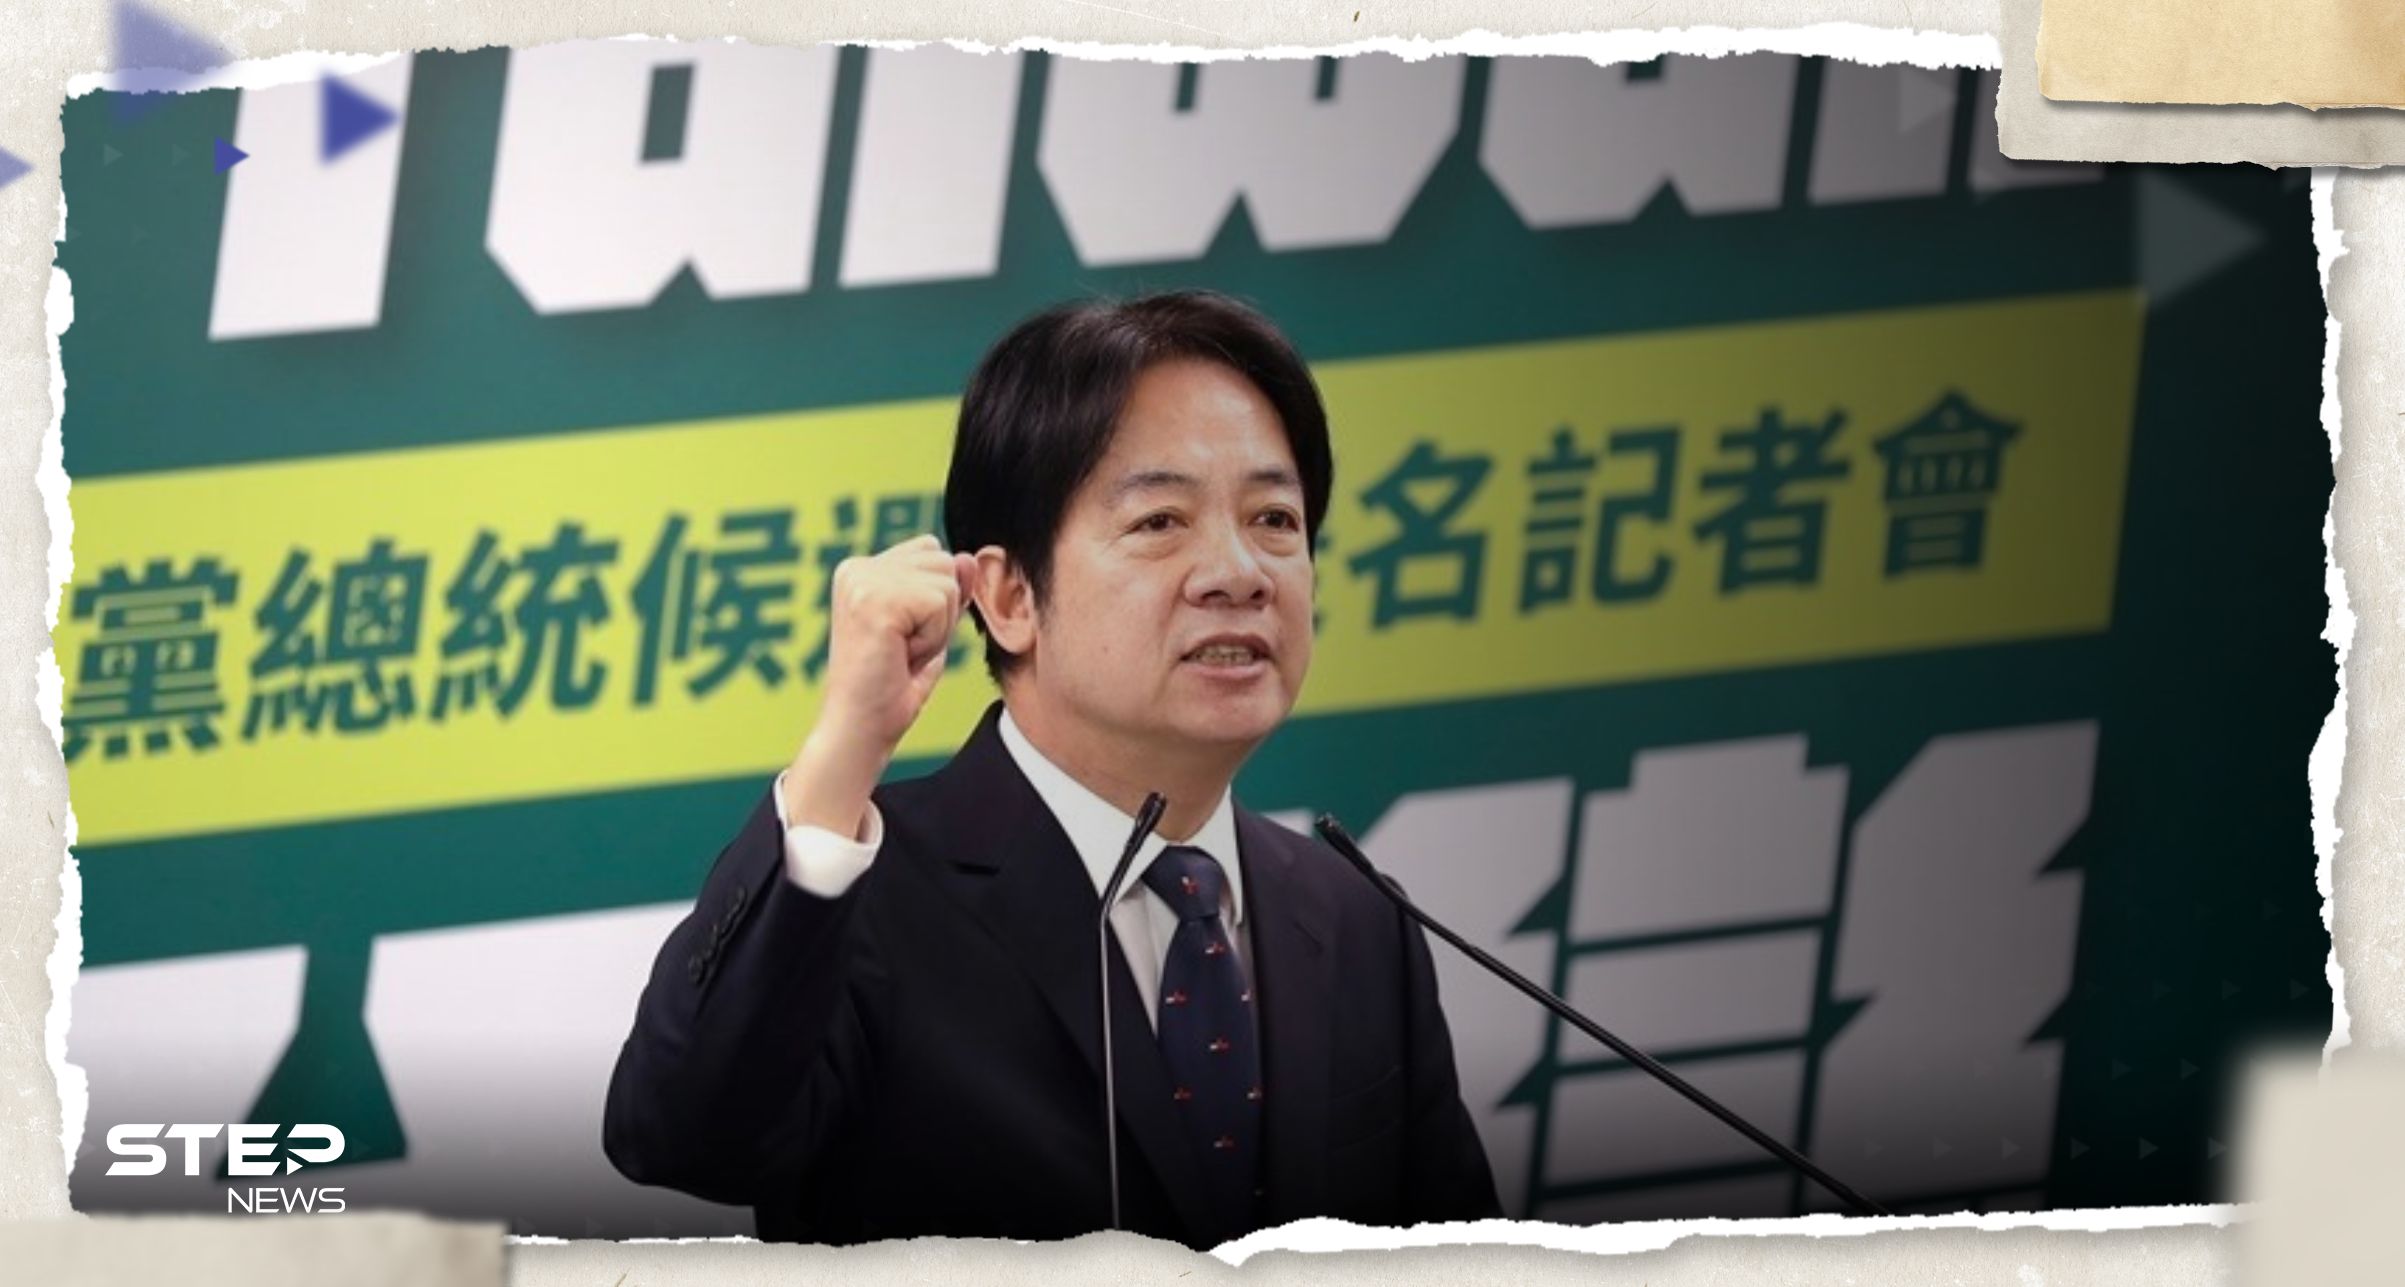 نائب رئيسة تايوان الصين ليست من تقرر الفائز في الانتخابات